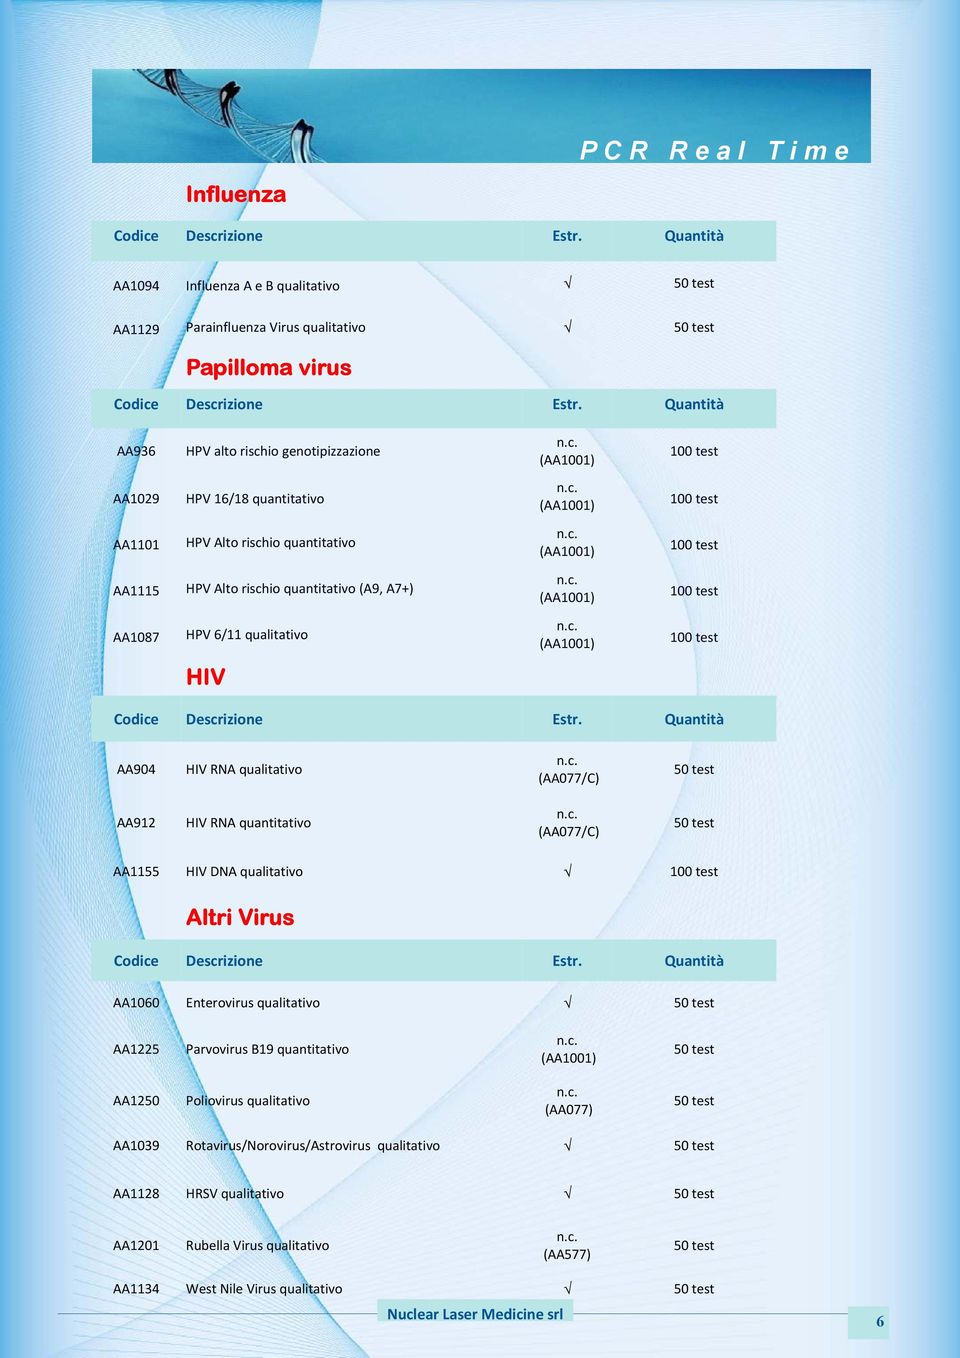 c. (AA1001) 100test AA1087 HPV6/11qualitativo n.c. (AA1001) 100test HIV Codice Descrizione Estr. Quantità AA904 HIVRNAqualitativo n.c. (AA077/C) 50test AA912 HIVRNAquantitativo n.c. (AA077/C) 50test AA1155 HIVDNAqualitativo 100test Altri Virus Codice Descrizione Estr.